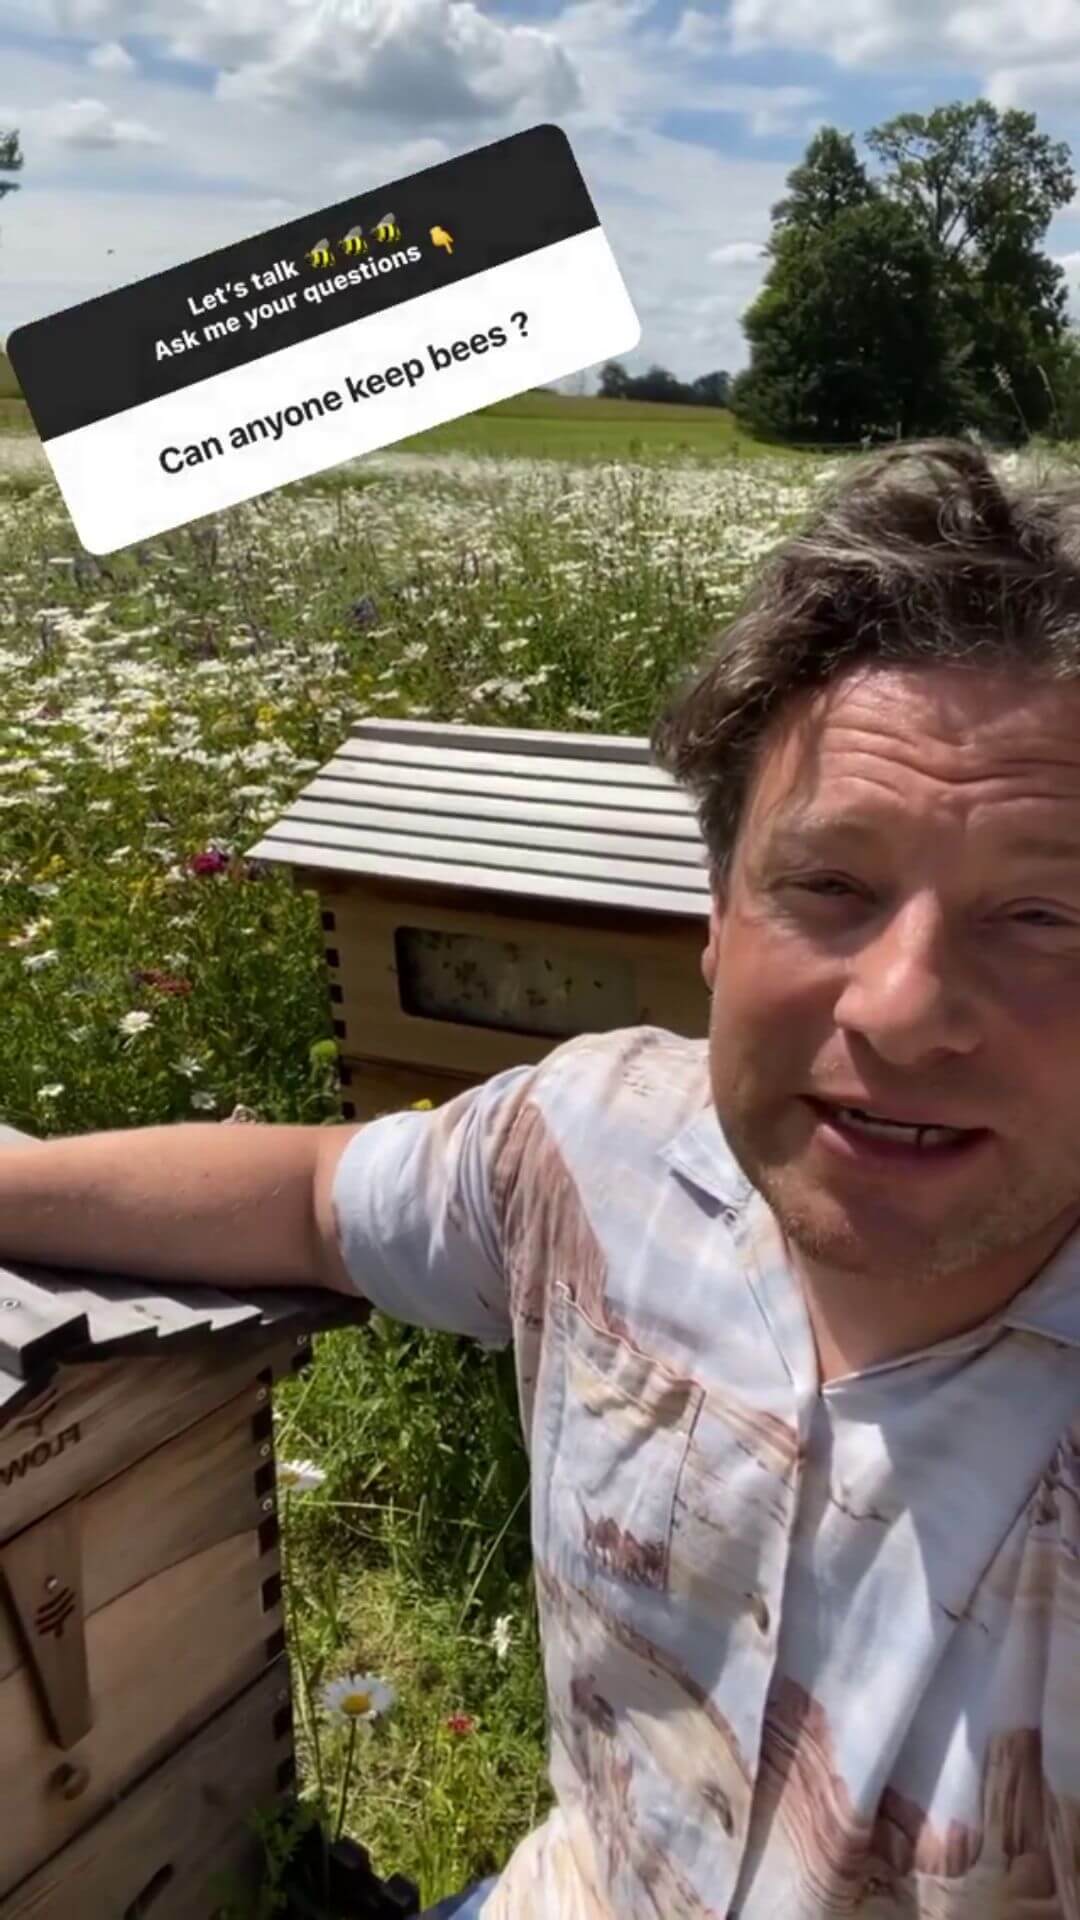 Can anyone keep bees?